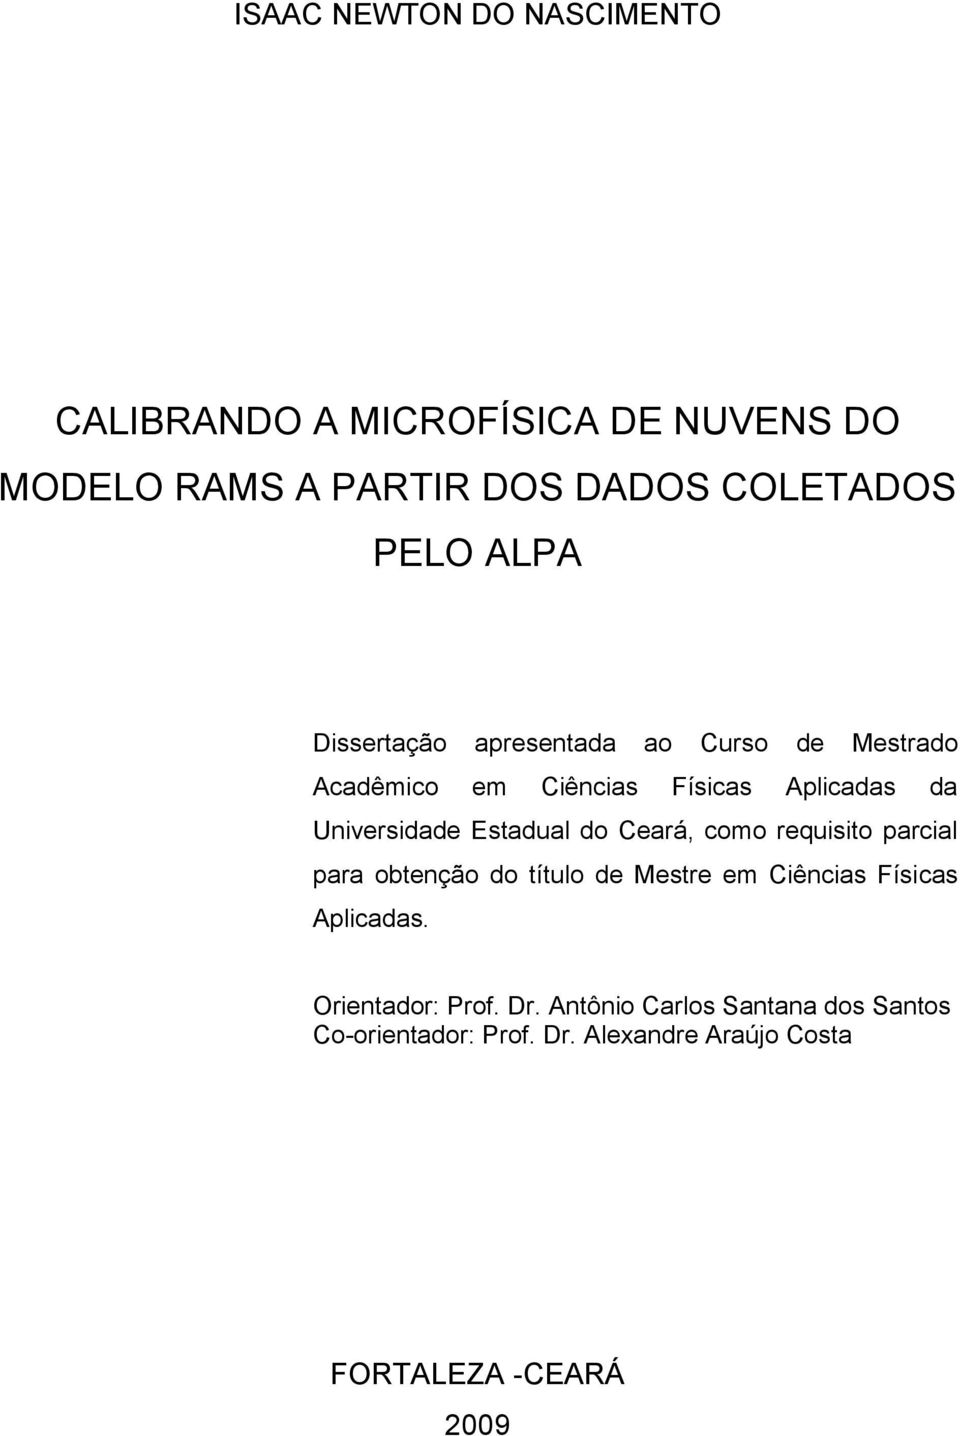 Estadual do Ceará, como requisito parcial para obtenção do título de Mestre em Ciências Físicas Aplicadas.